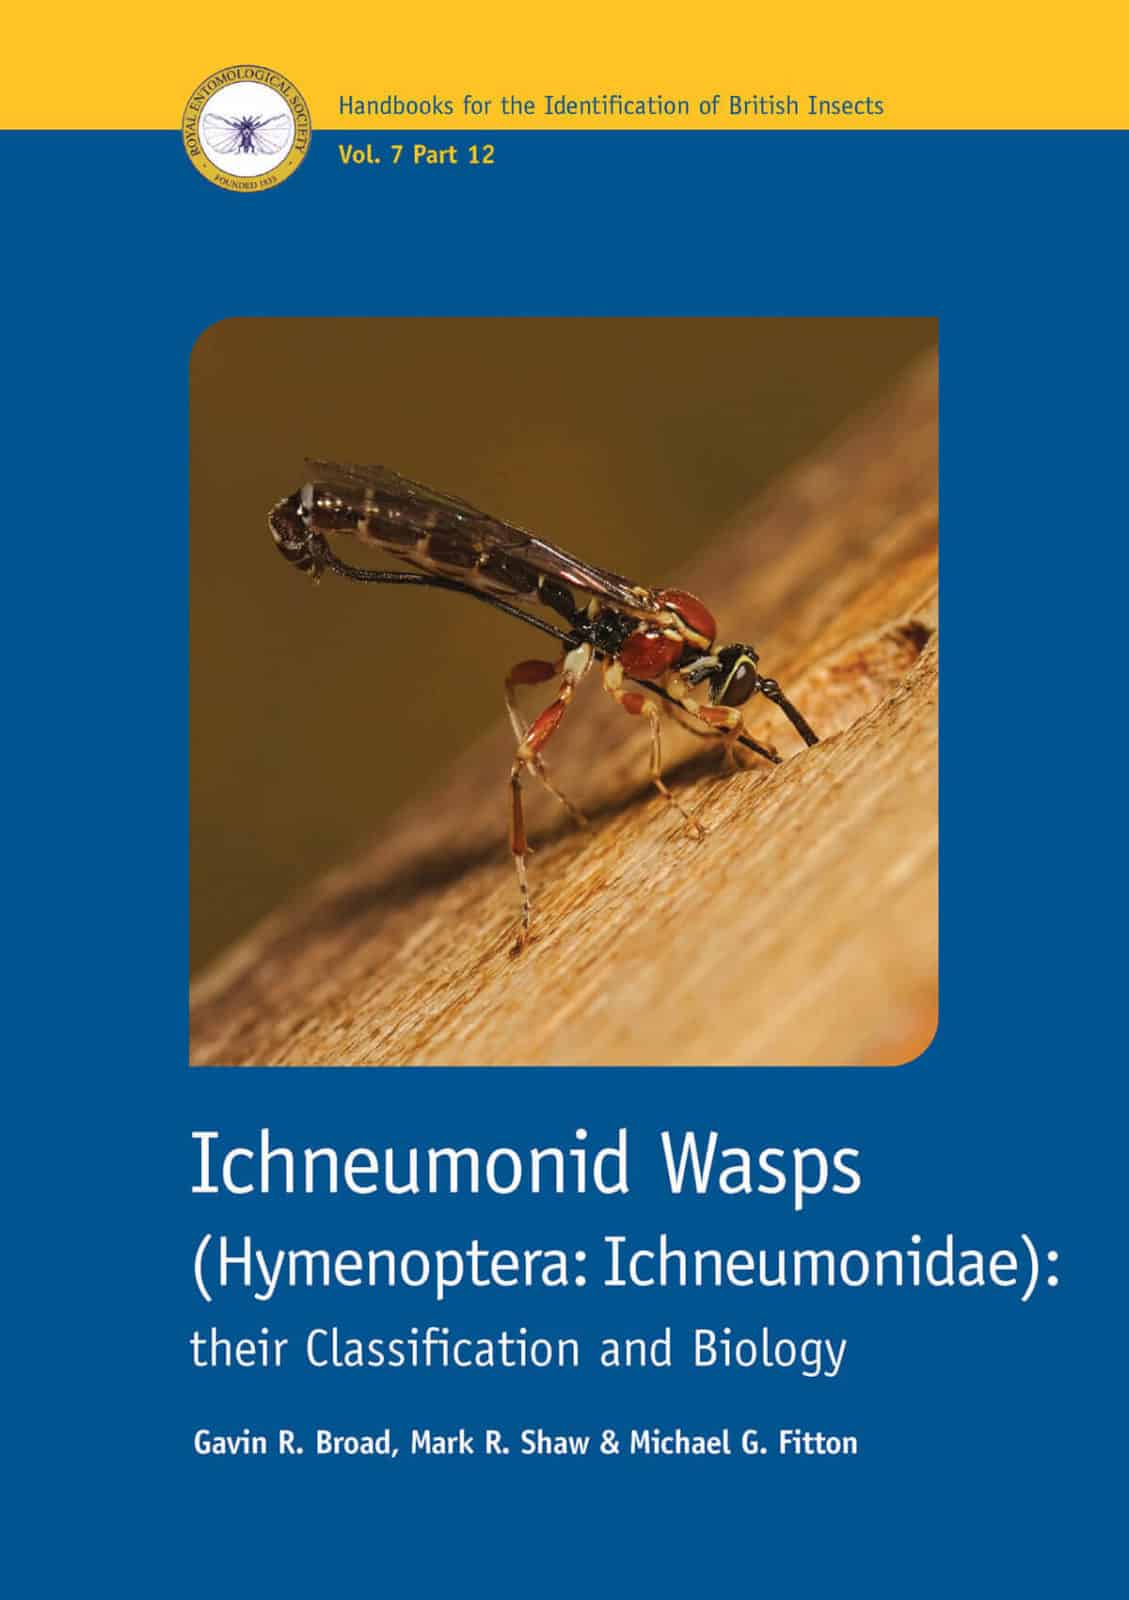 Ichneumonid wasps